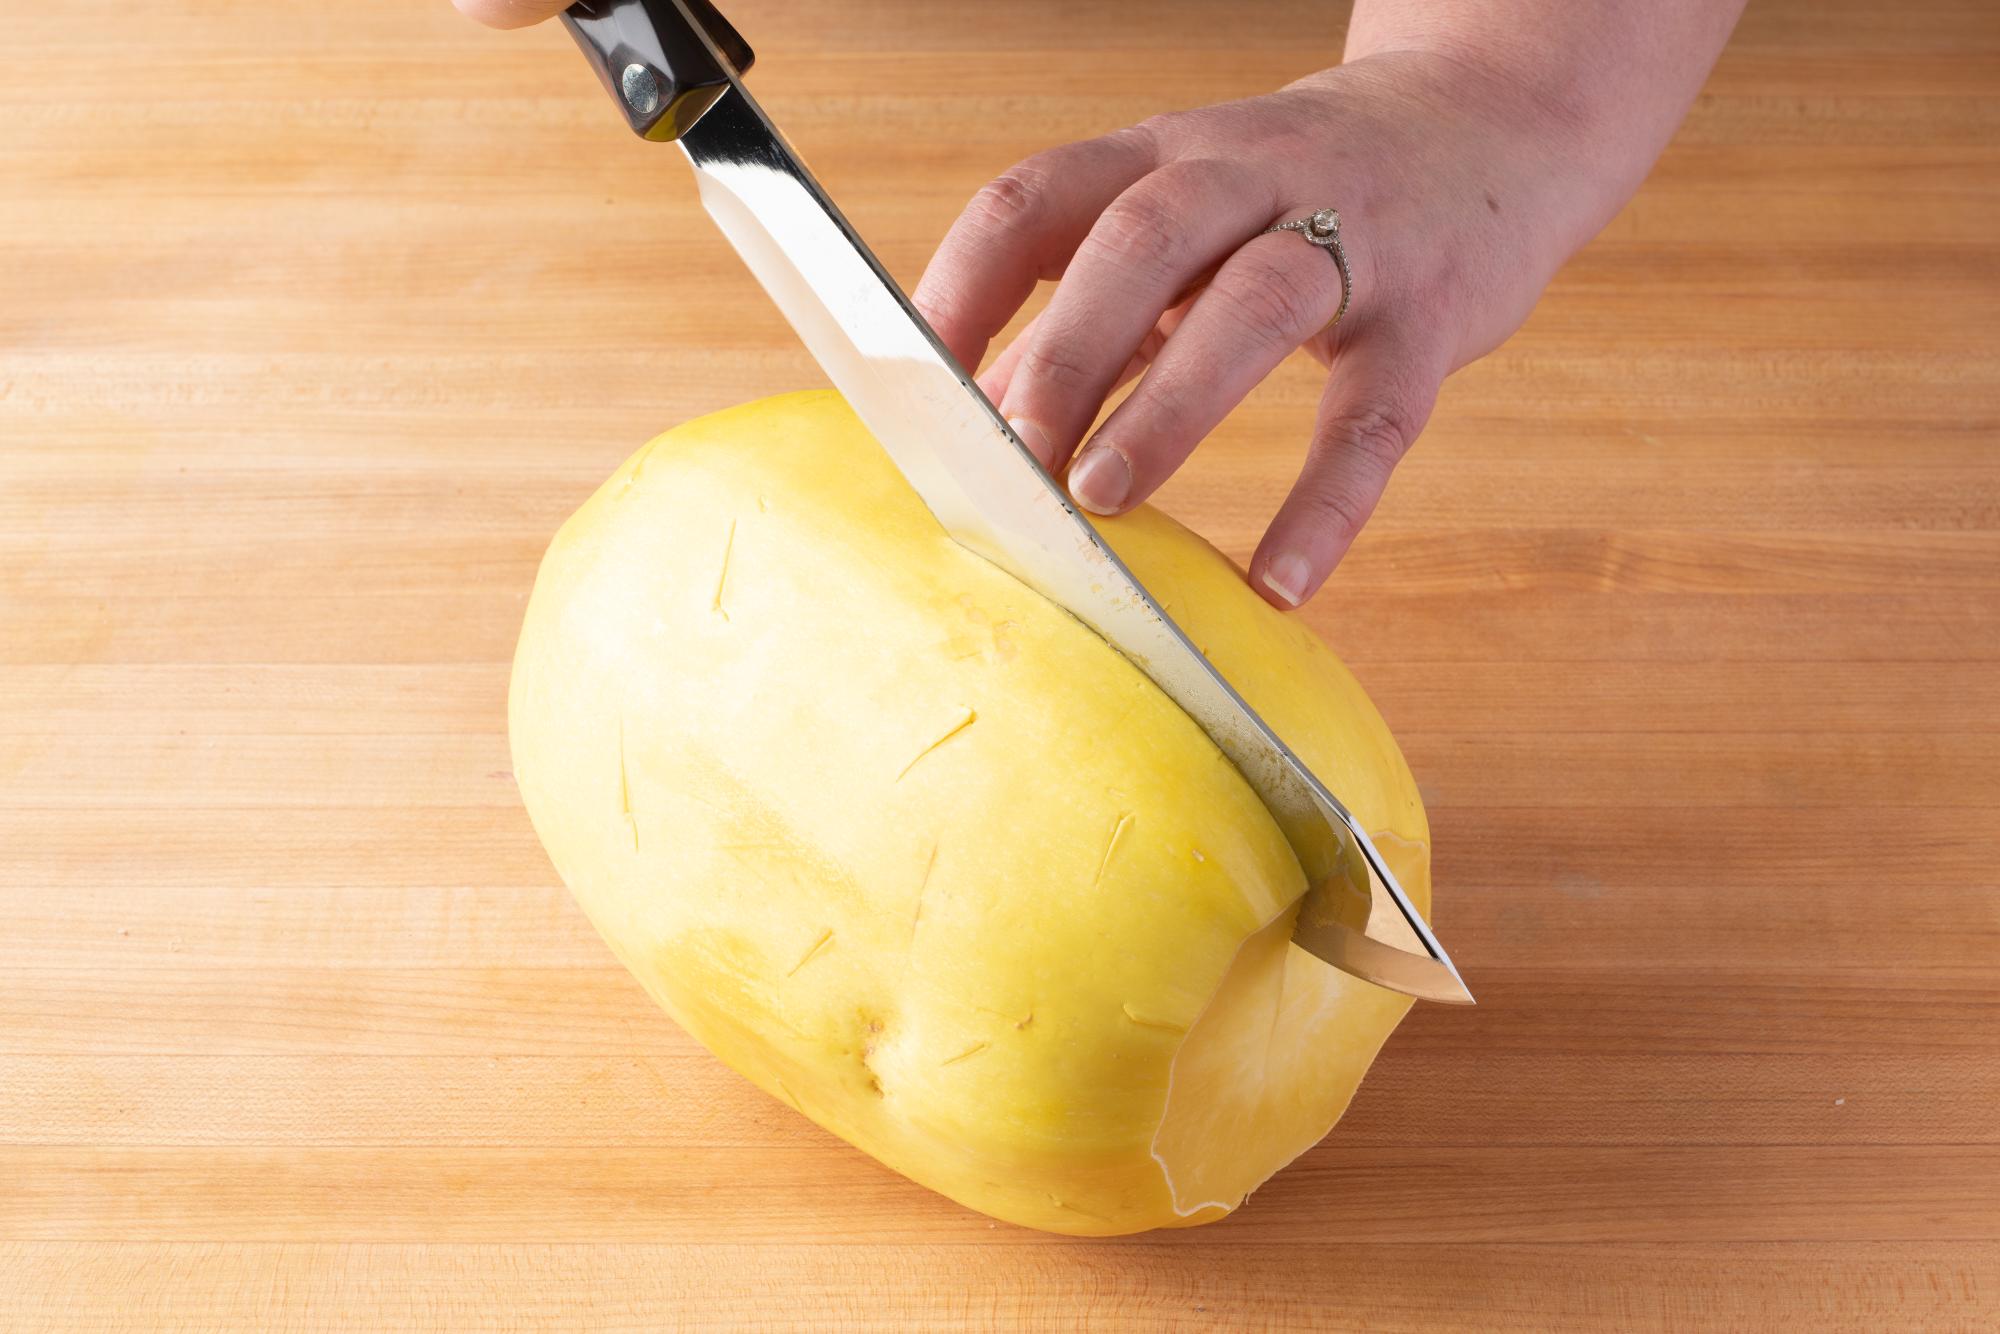 Butcher Knife cutting squash in half.